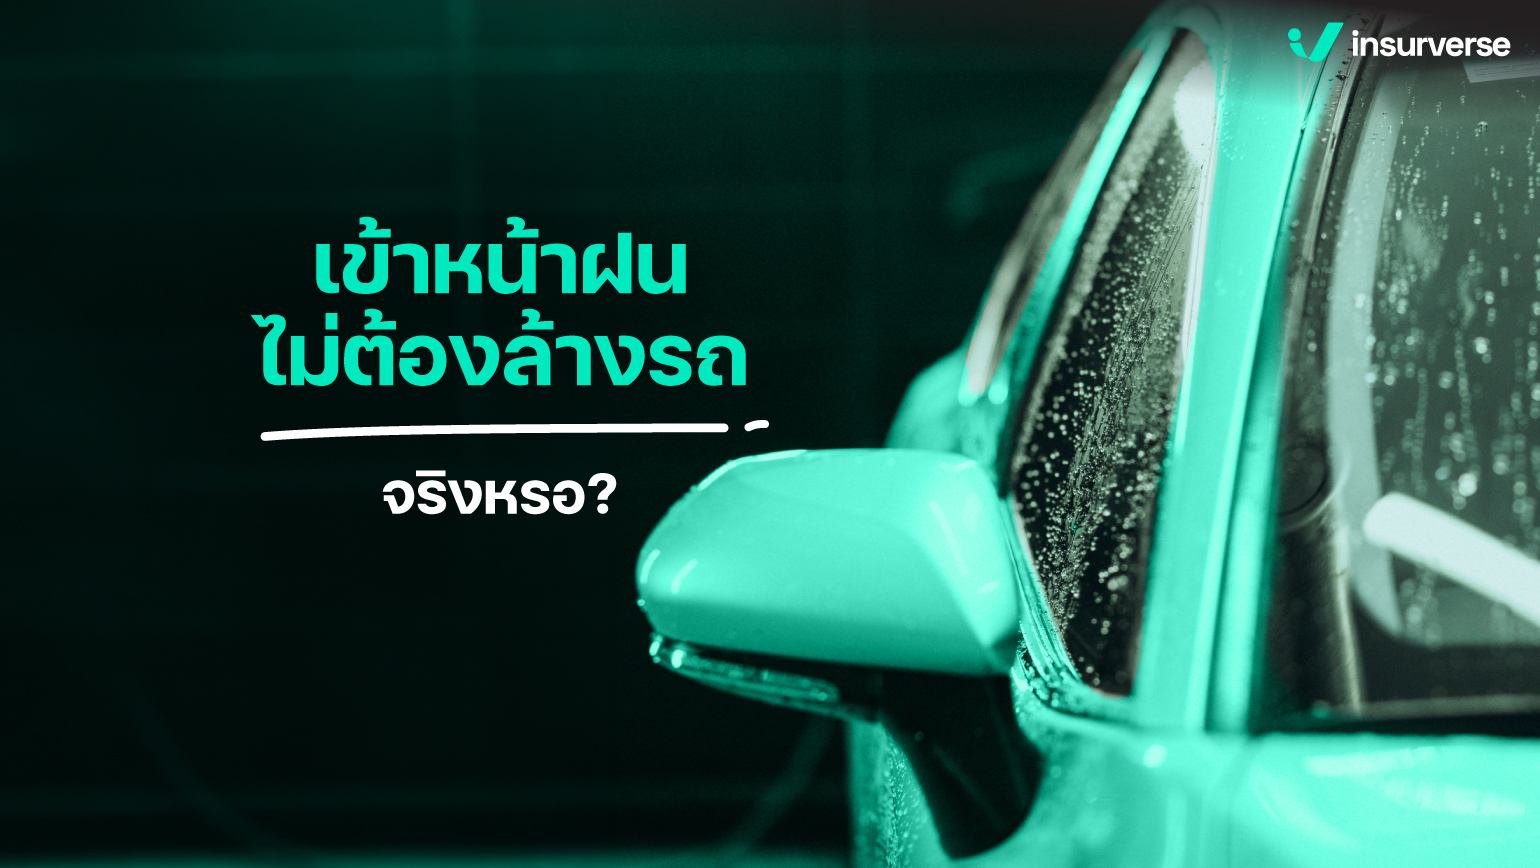 เข้าหน้าฝน ไม่ต้องล้างรถจริงหรือ?